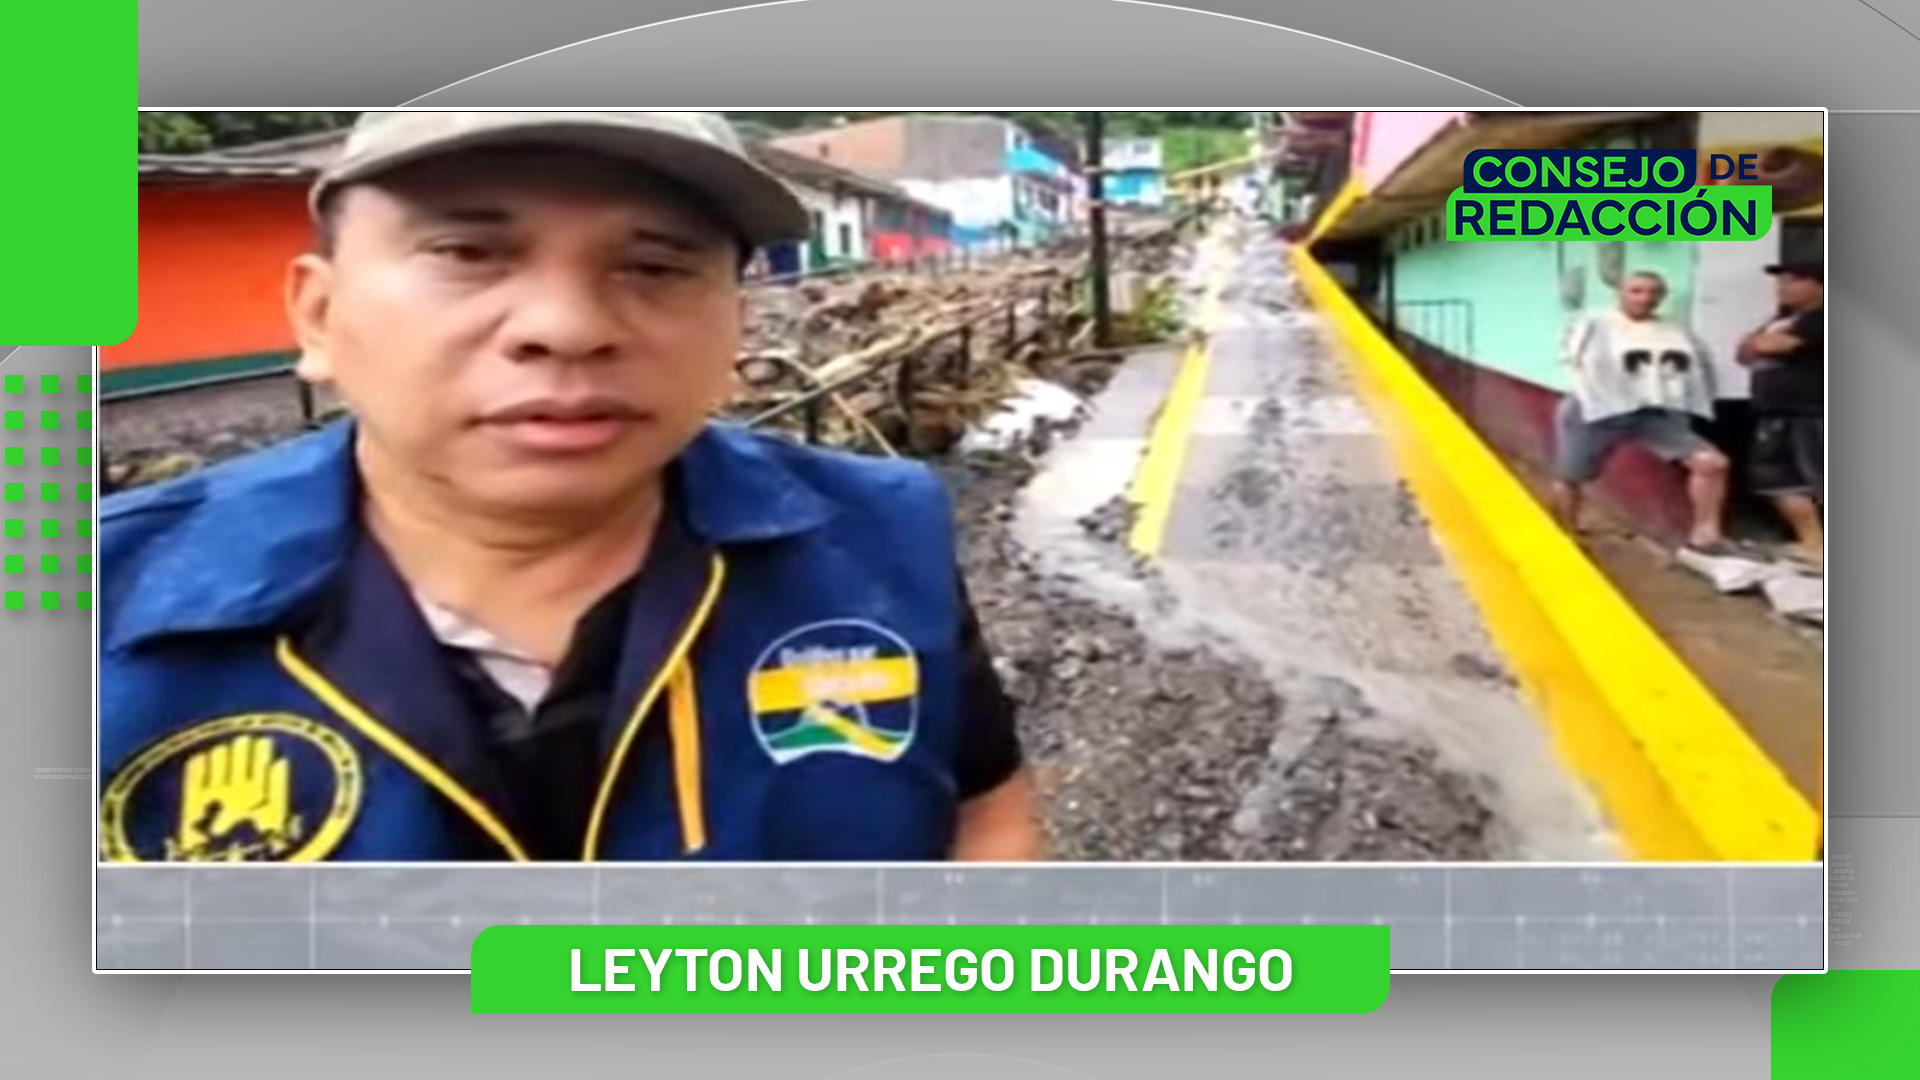 Entrevista a Leyton Urrego Durango – Consejo de Redacción